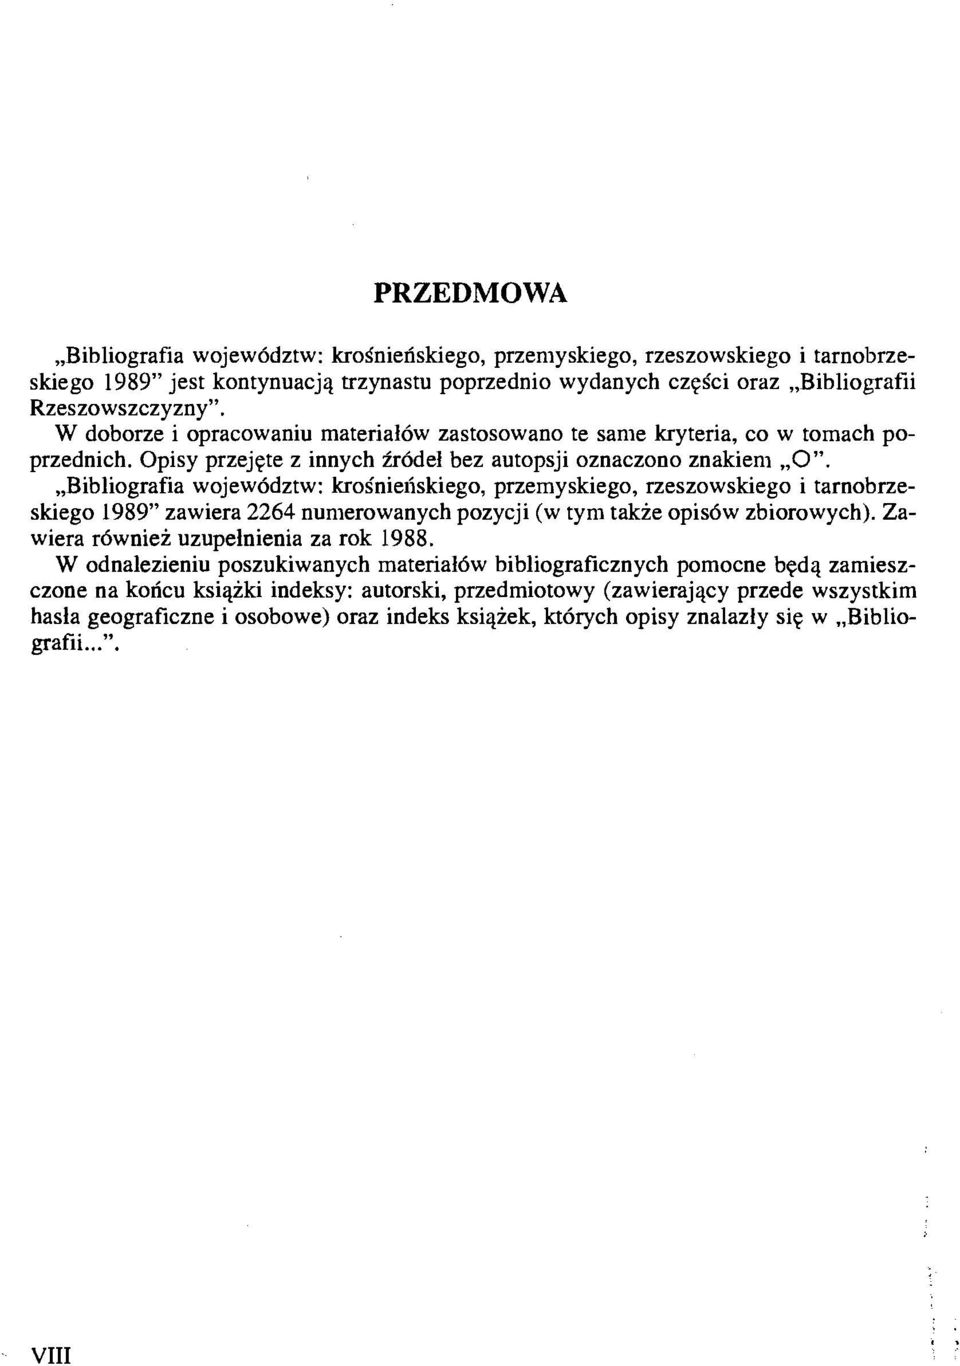 ,,bibliografia wojew6dztw: kros'nieliskiego, pnemyskiego, rzeszowskiego i tarnobrzeskiego 1989" zawiera 2264 numerowanych pozycji (w tym takze opidw zbiorowych).